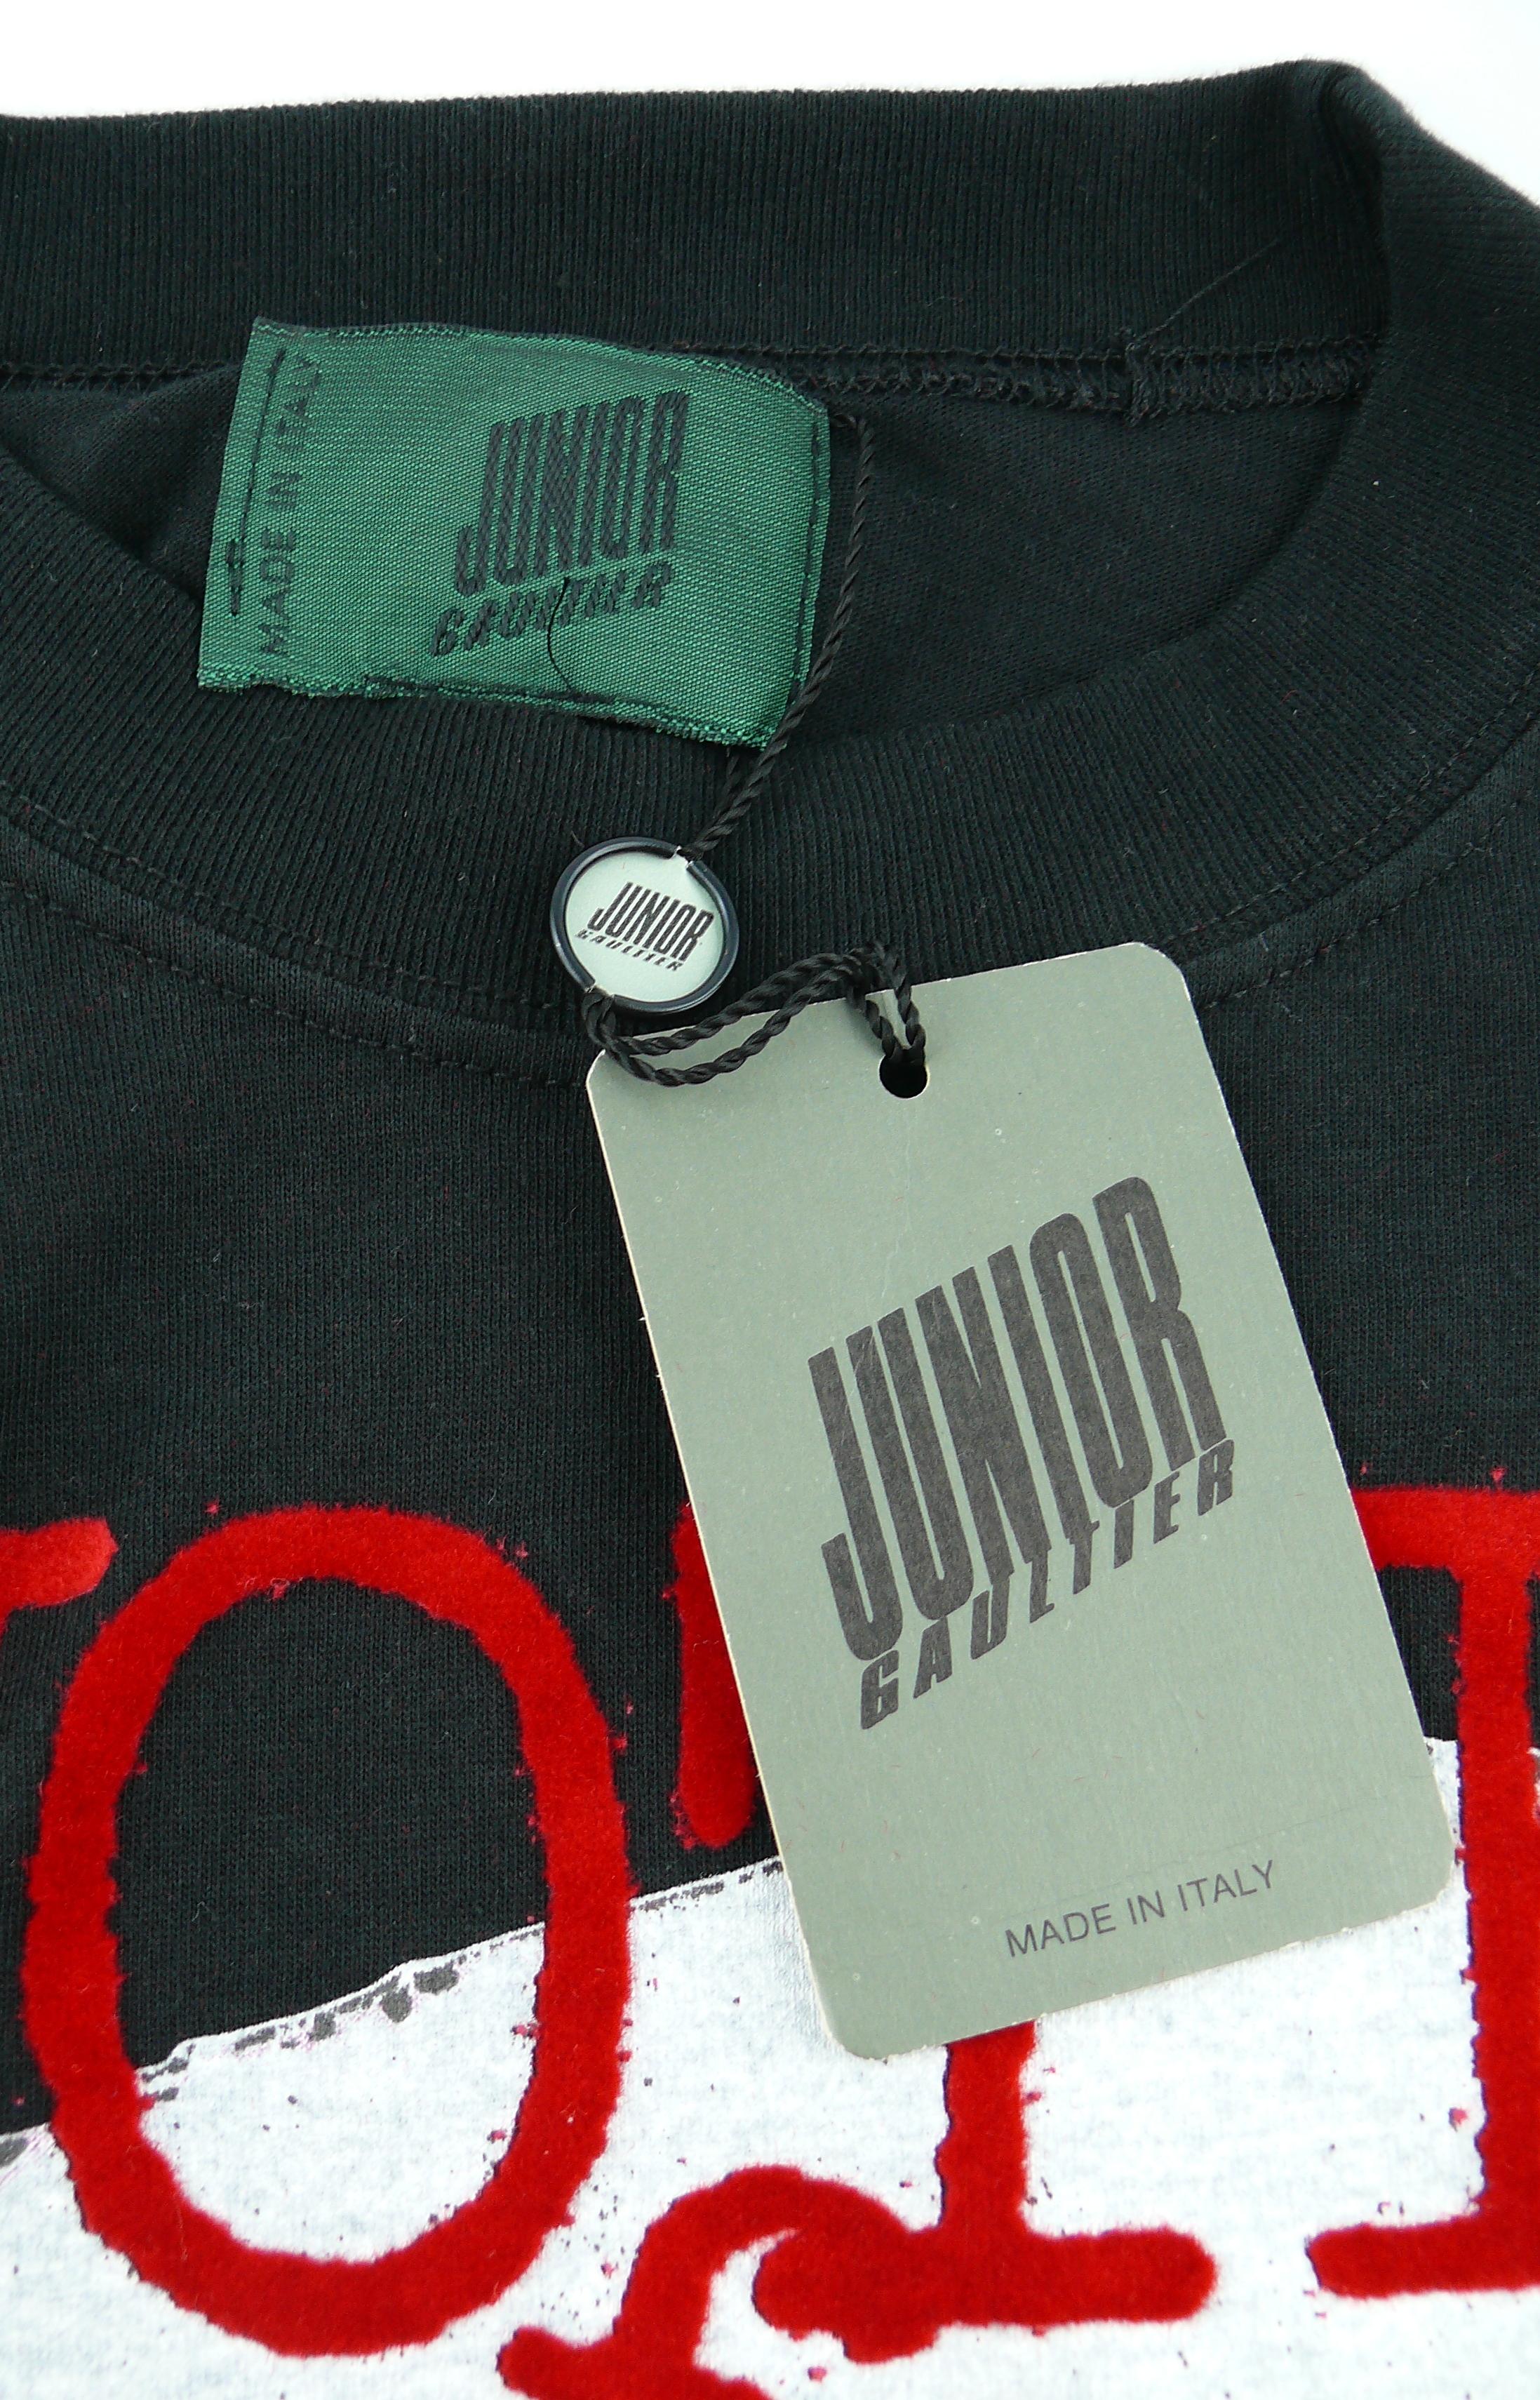 Black Jean Paul Gaultier Vintage Vote For T-Shirt Size M